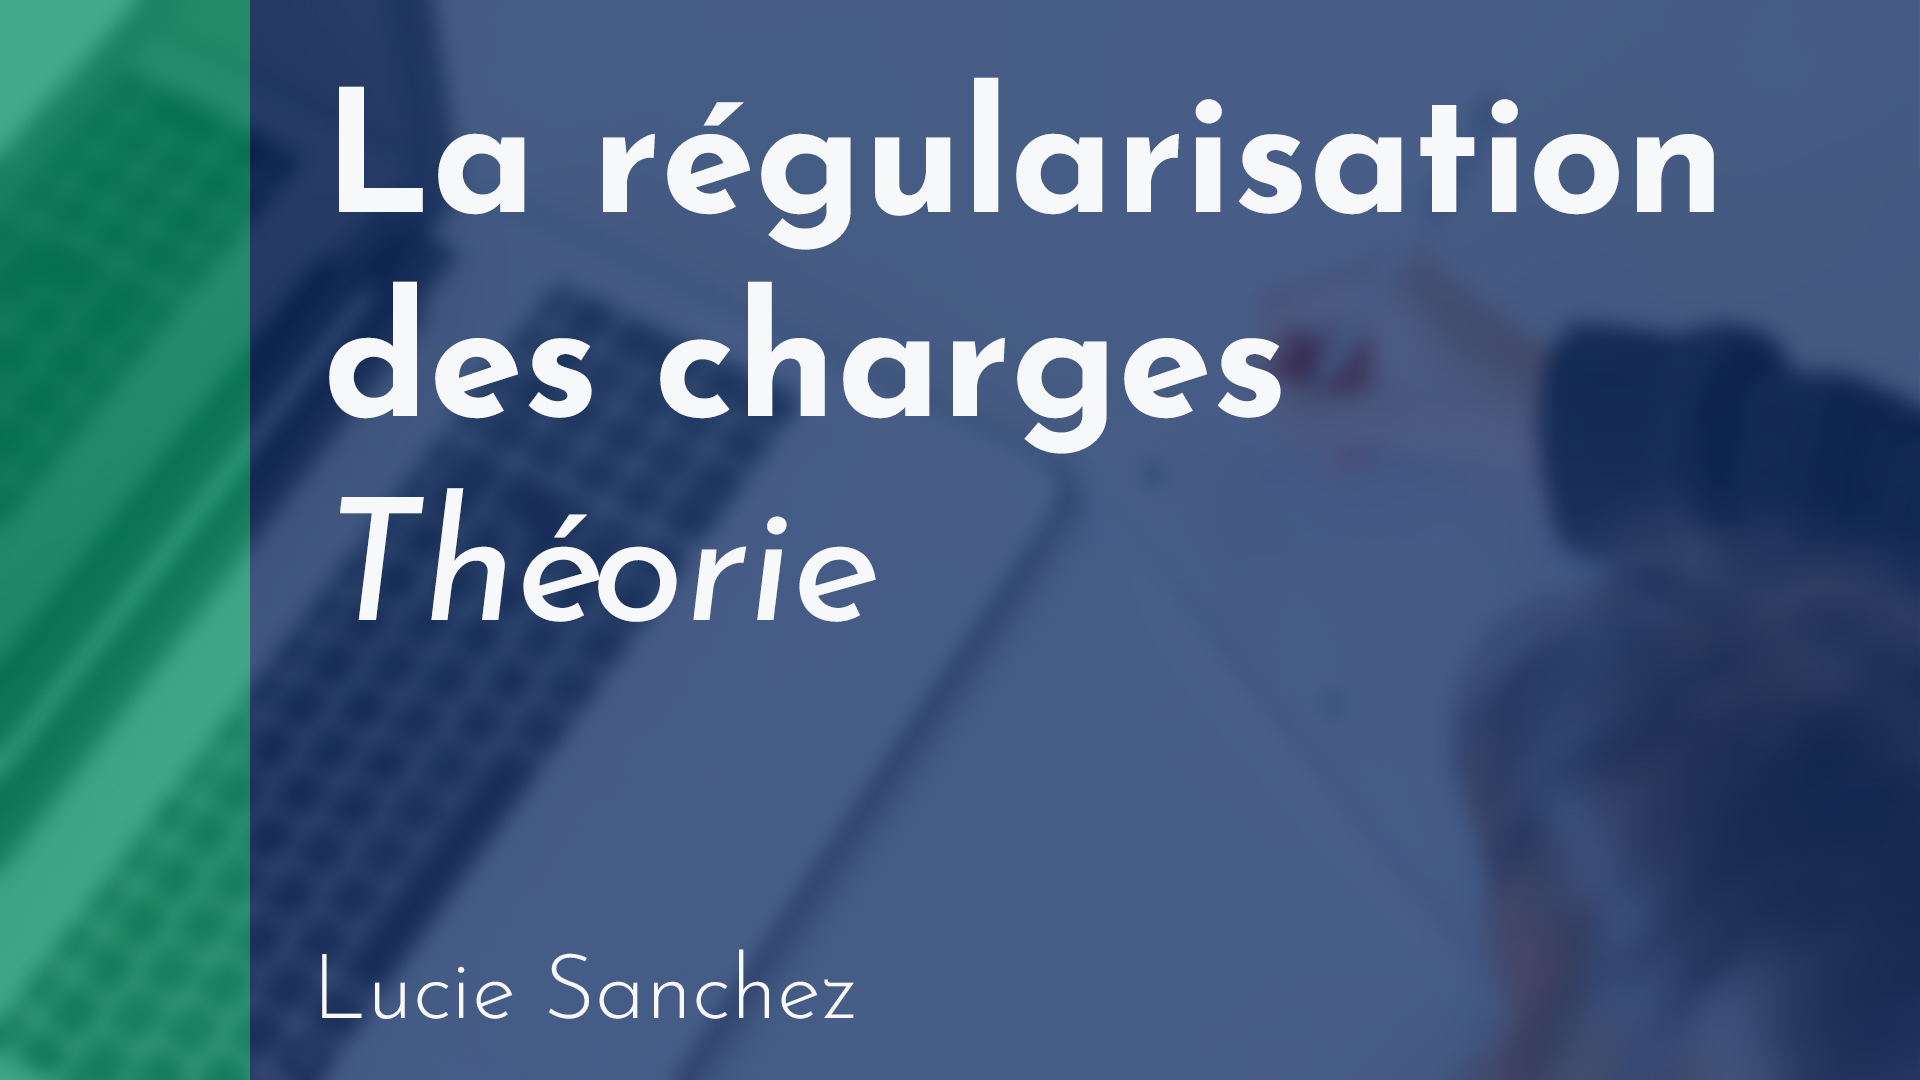 Gérance - Régularisation des charges - Théorie - Lucie Sanchez